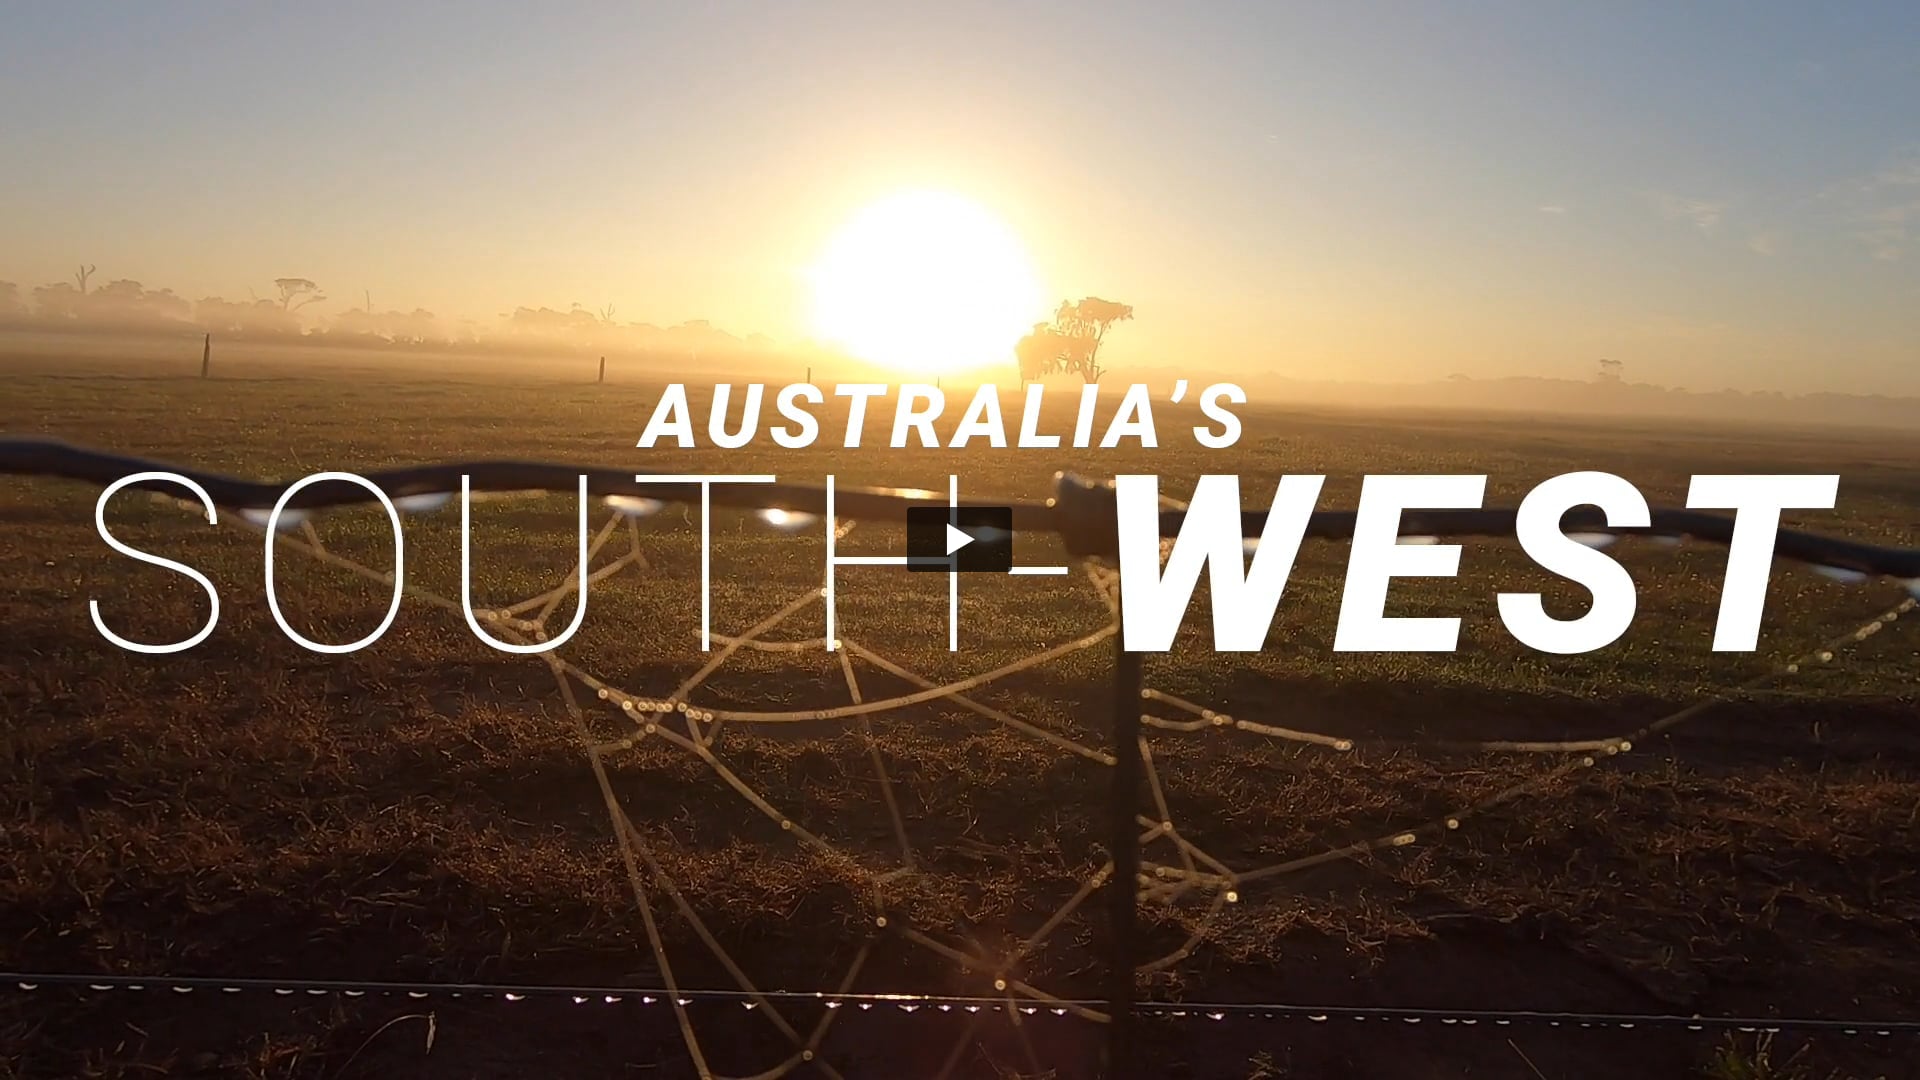 Australia's South West